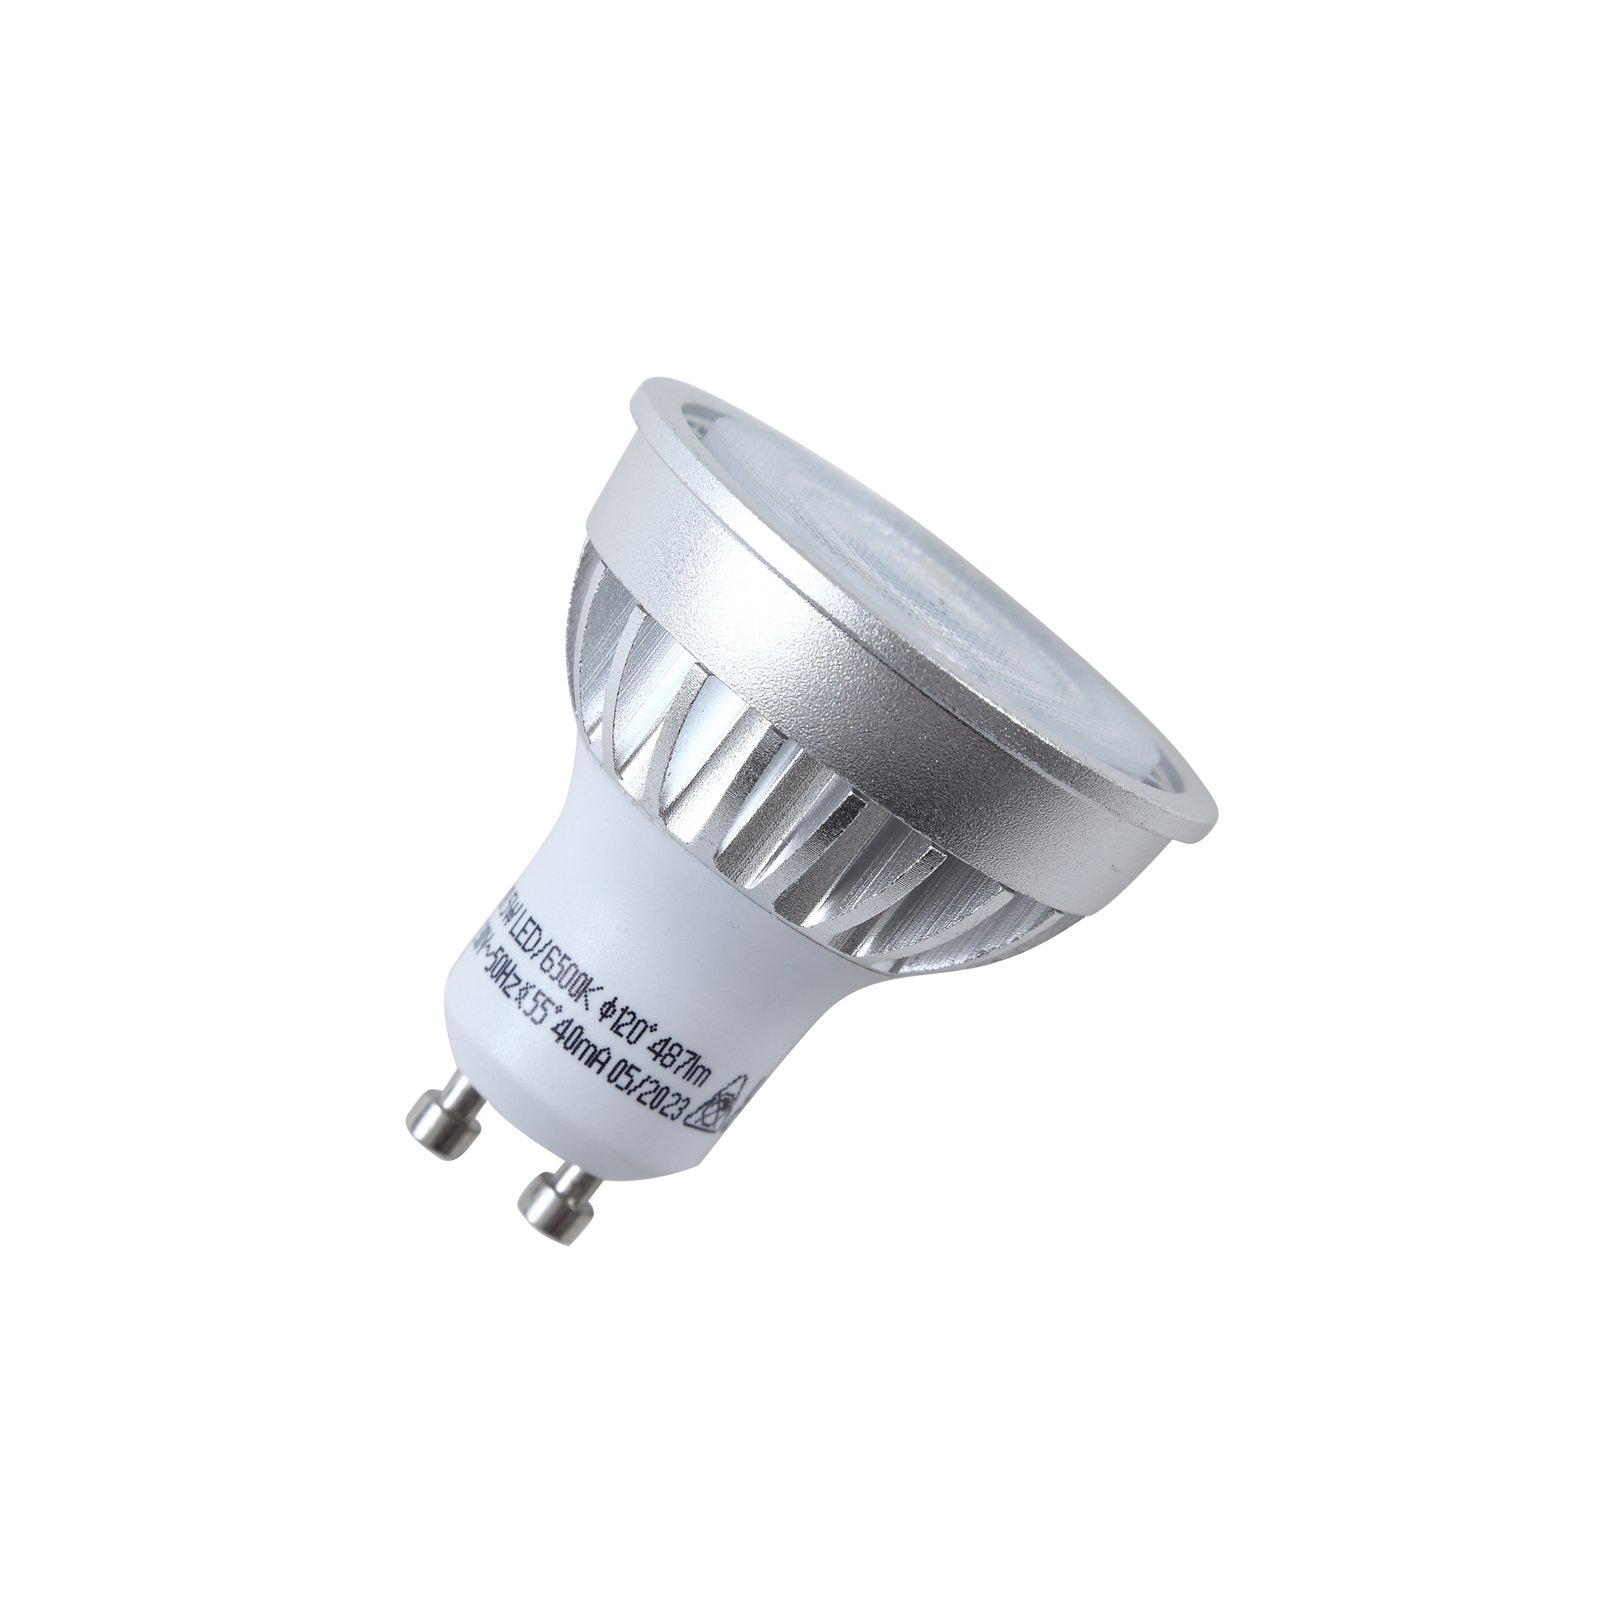 Reflector LED bulb GU10 5 W 6,500 K 55°